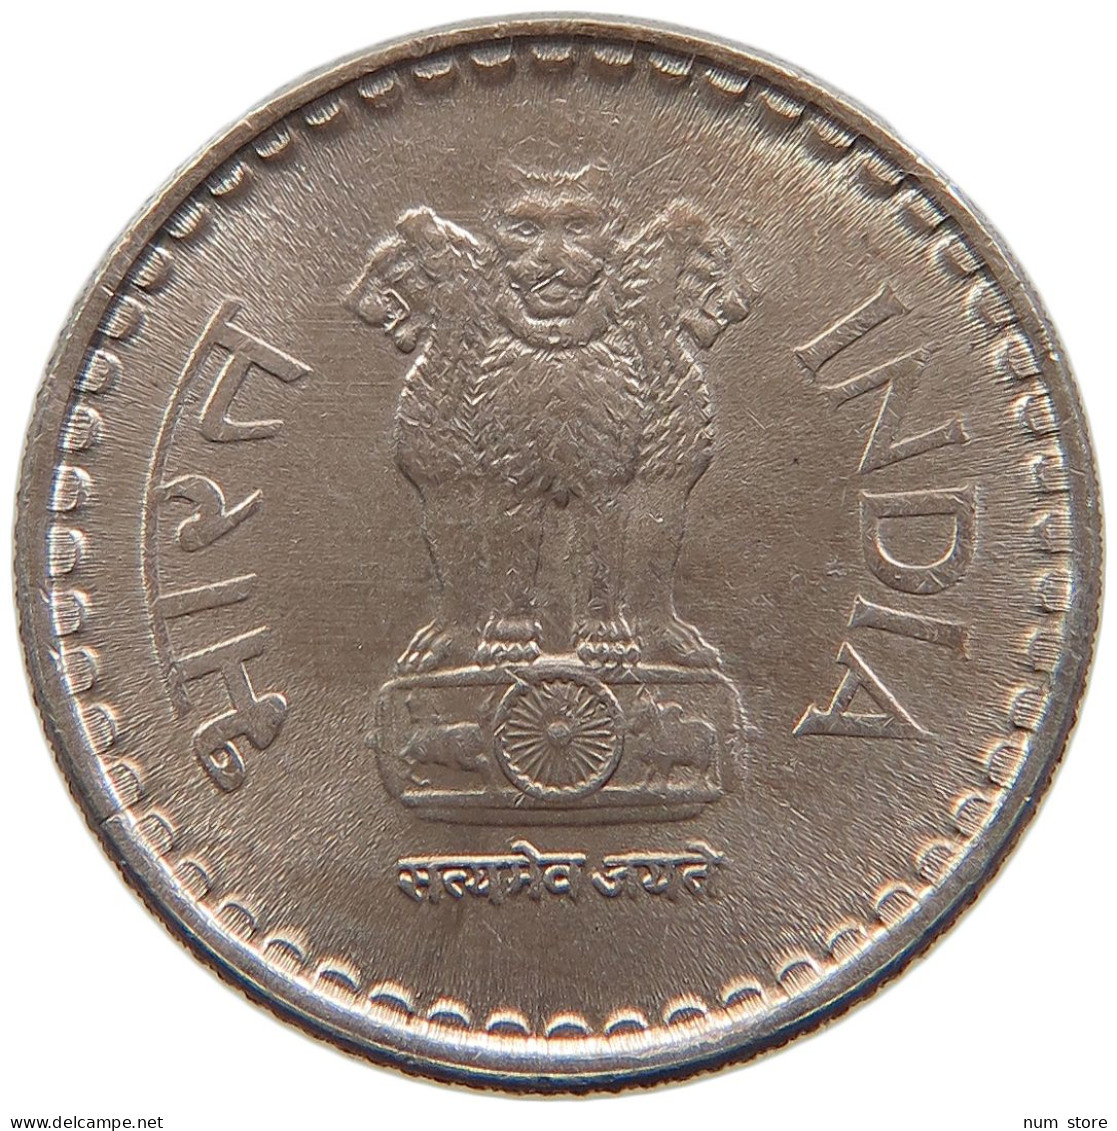 INDIA 5 RUPEES 2002 #s105 0069 - India